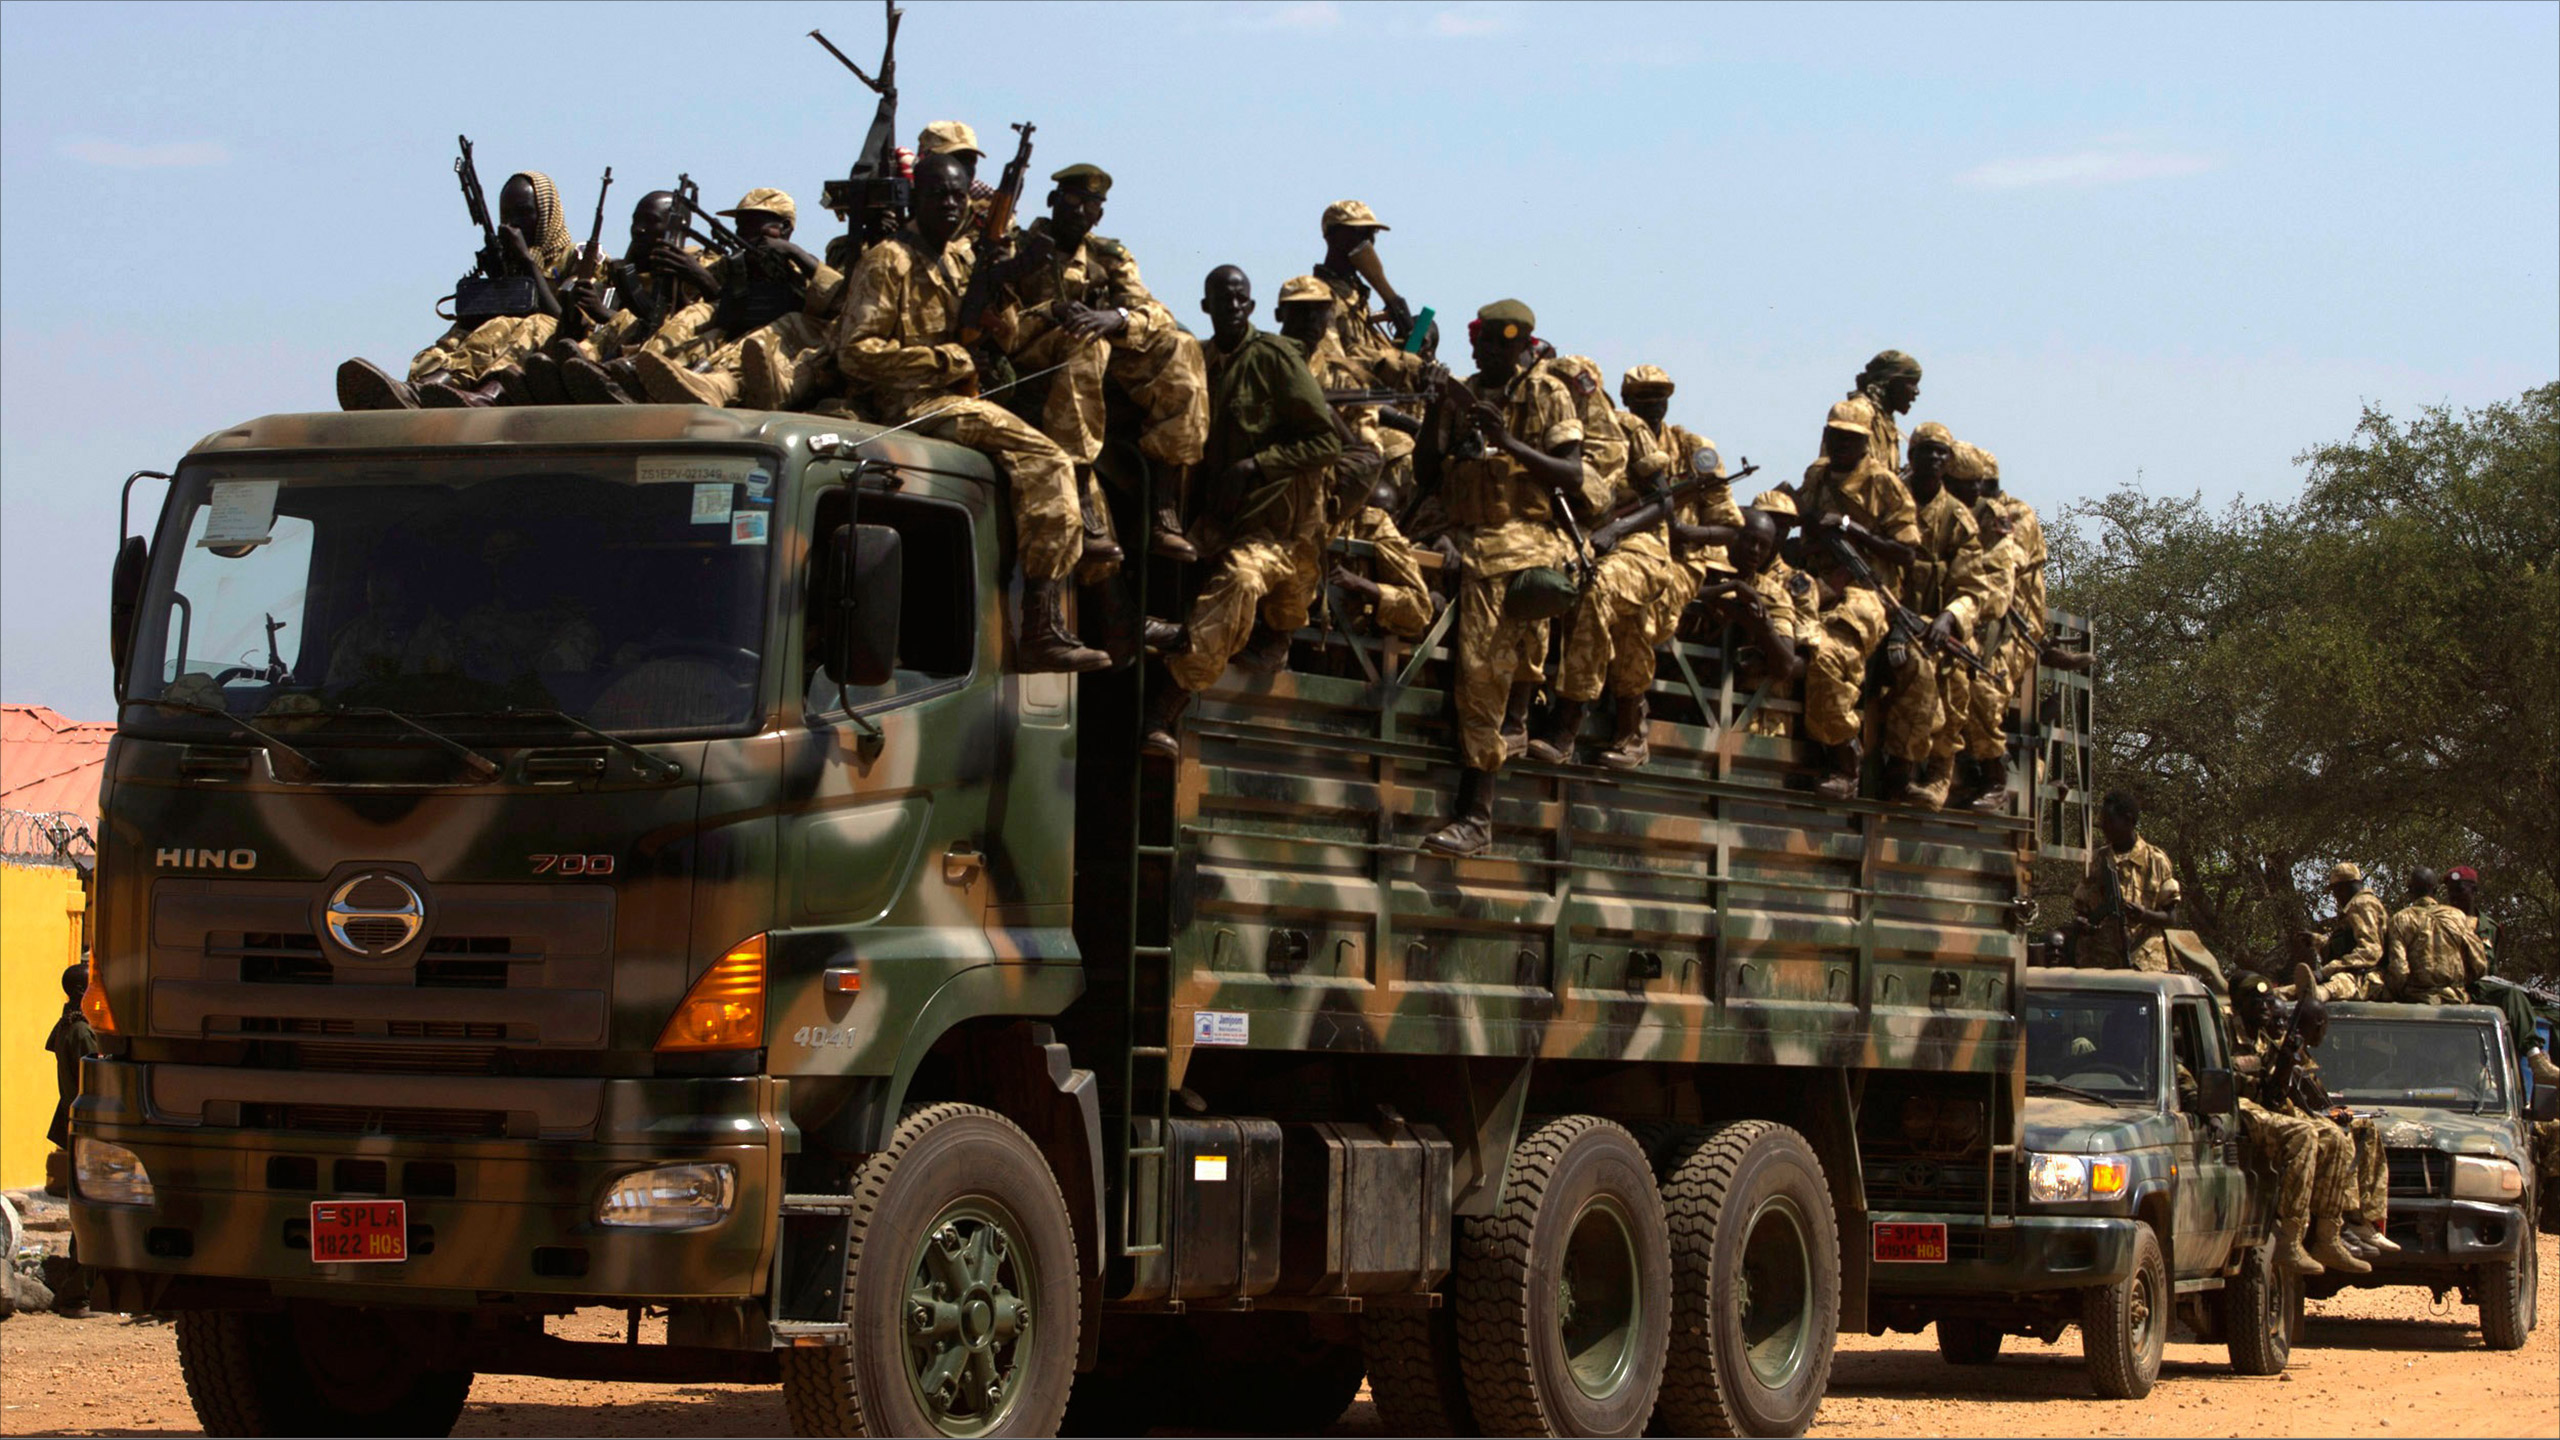 مراقبون يرون أن وقف القتال في جنوب السودان يعتبر أمرا ضروريا من أجل توصيل المساعدات إلى مستحقيها 